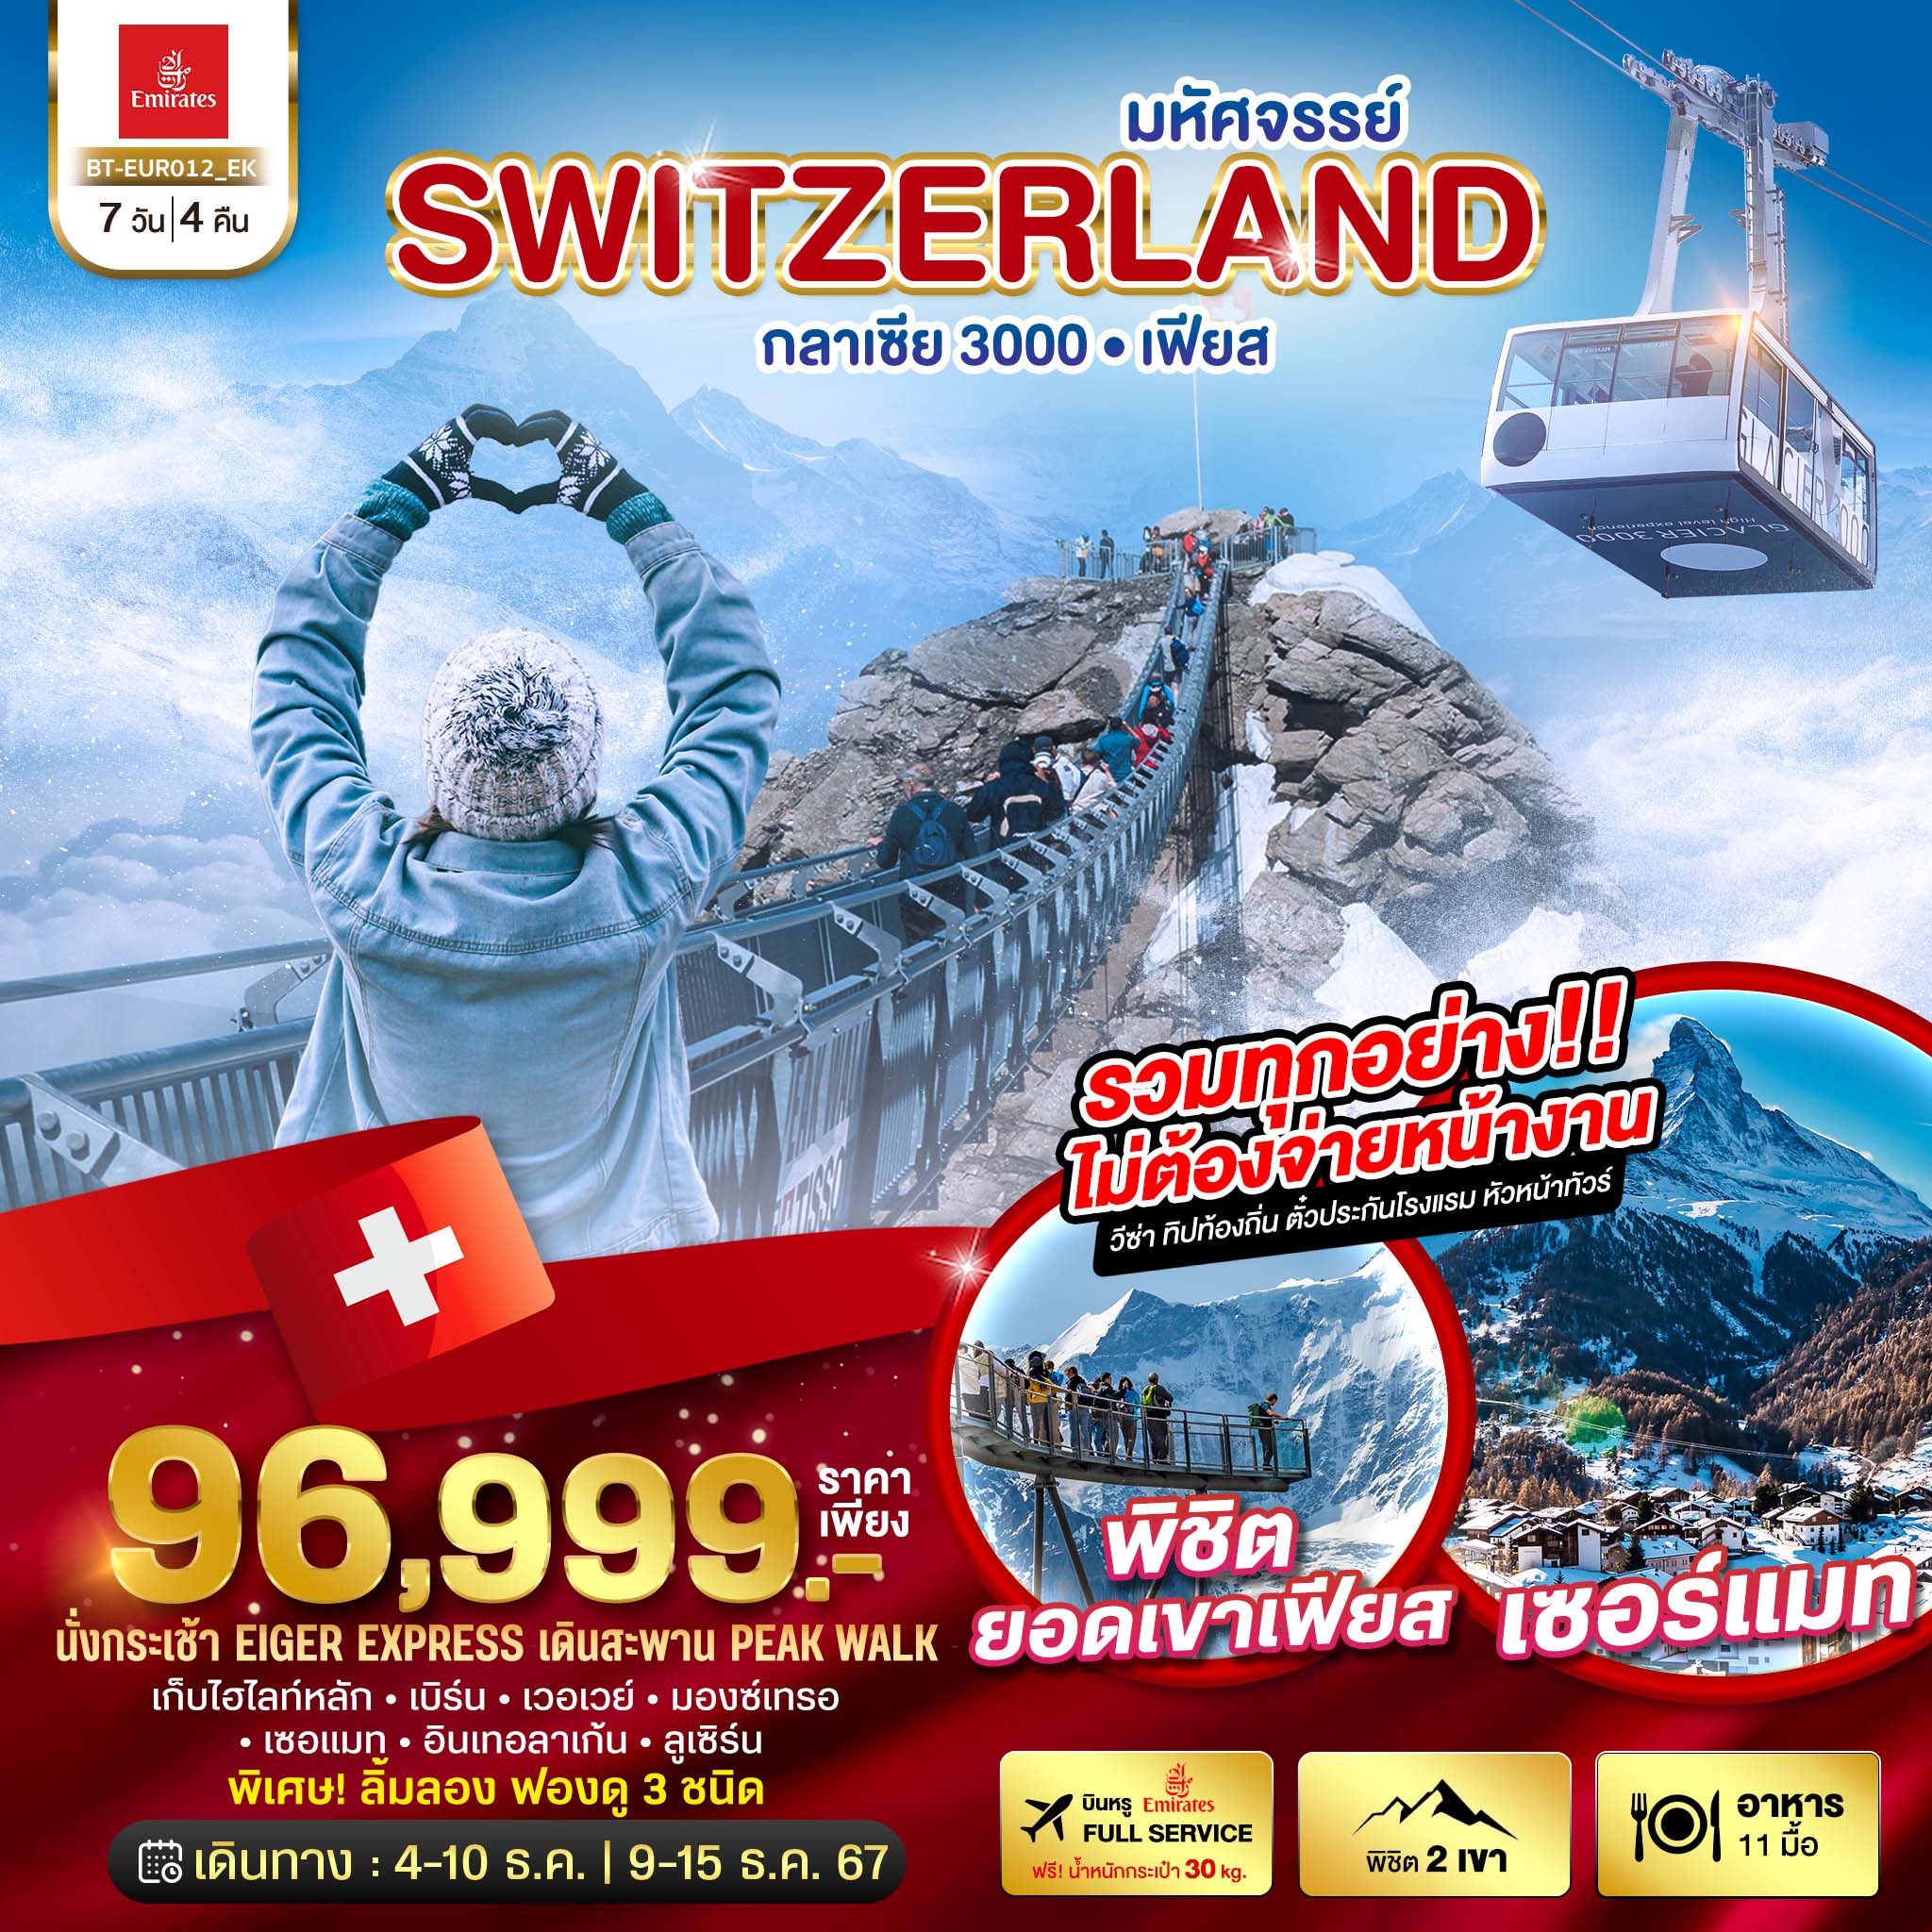 ทัวร์สวิตเซอร์แลนด์ มหัศจรรย์ Semi Grand Swiss พิชิต 2 เขา เฟียส กลาเซีย 3000 7วัน 4คืน (EK)